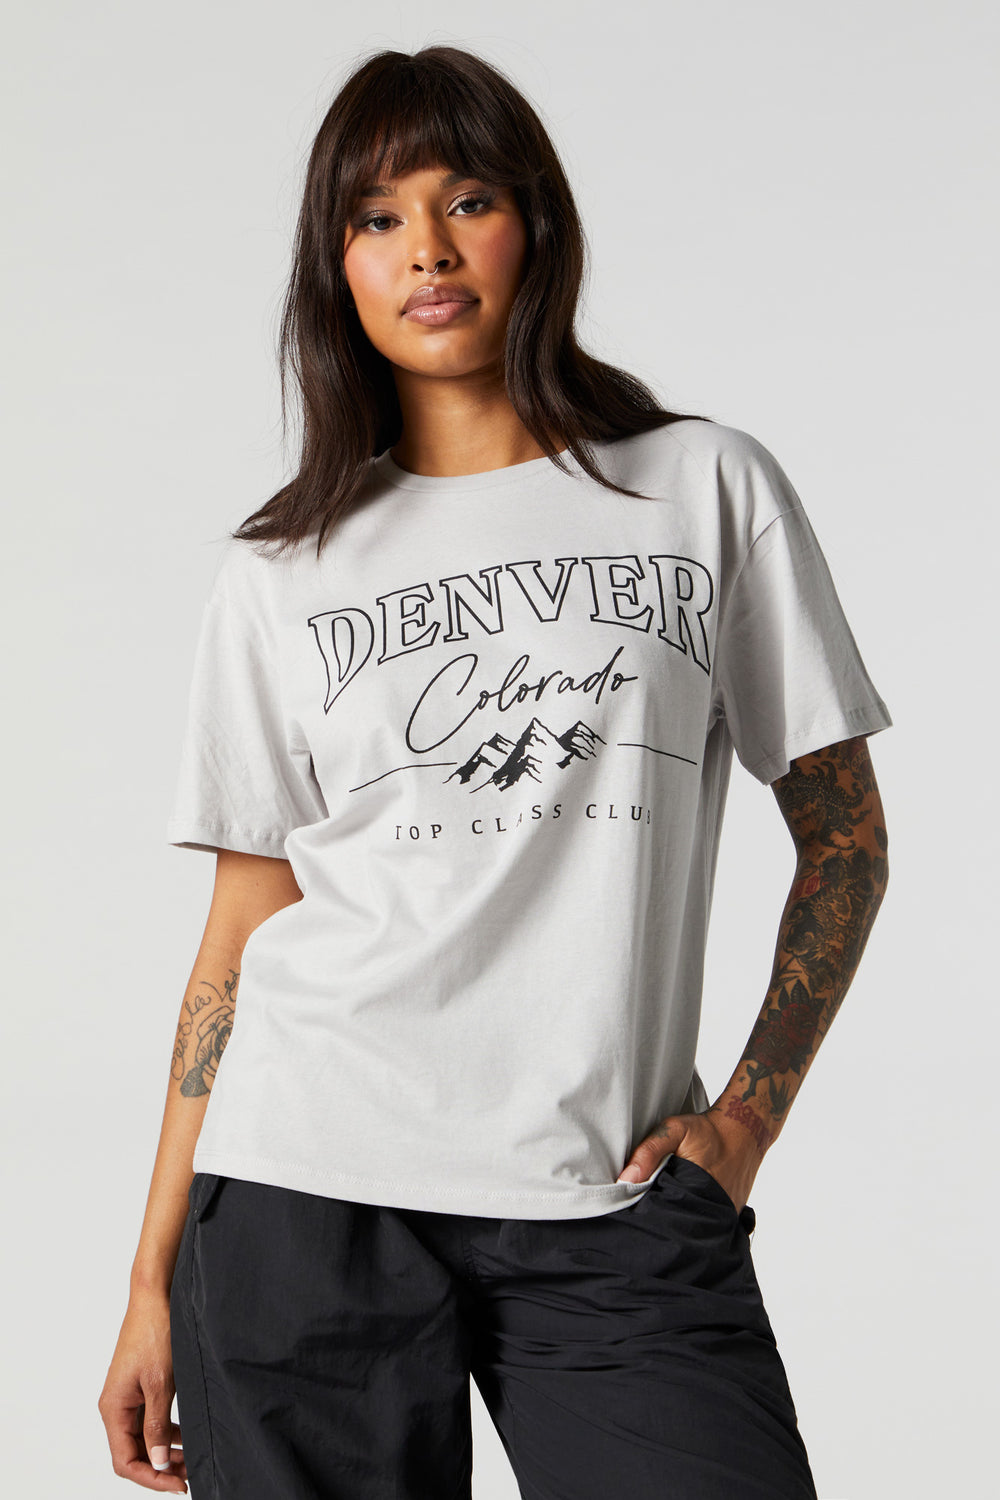 Denver Colorado Graphic Boyfriend T-Shirt Denver Colorado Graphic Boyfriend T-Shirt 2